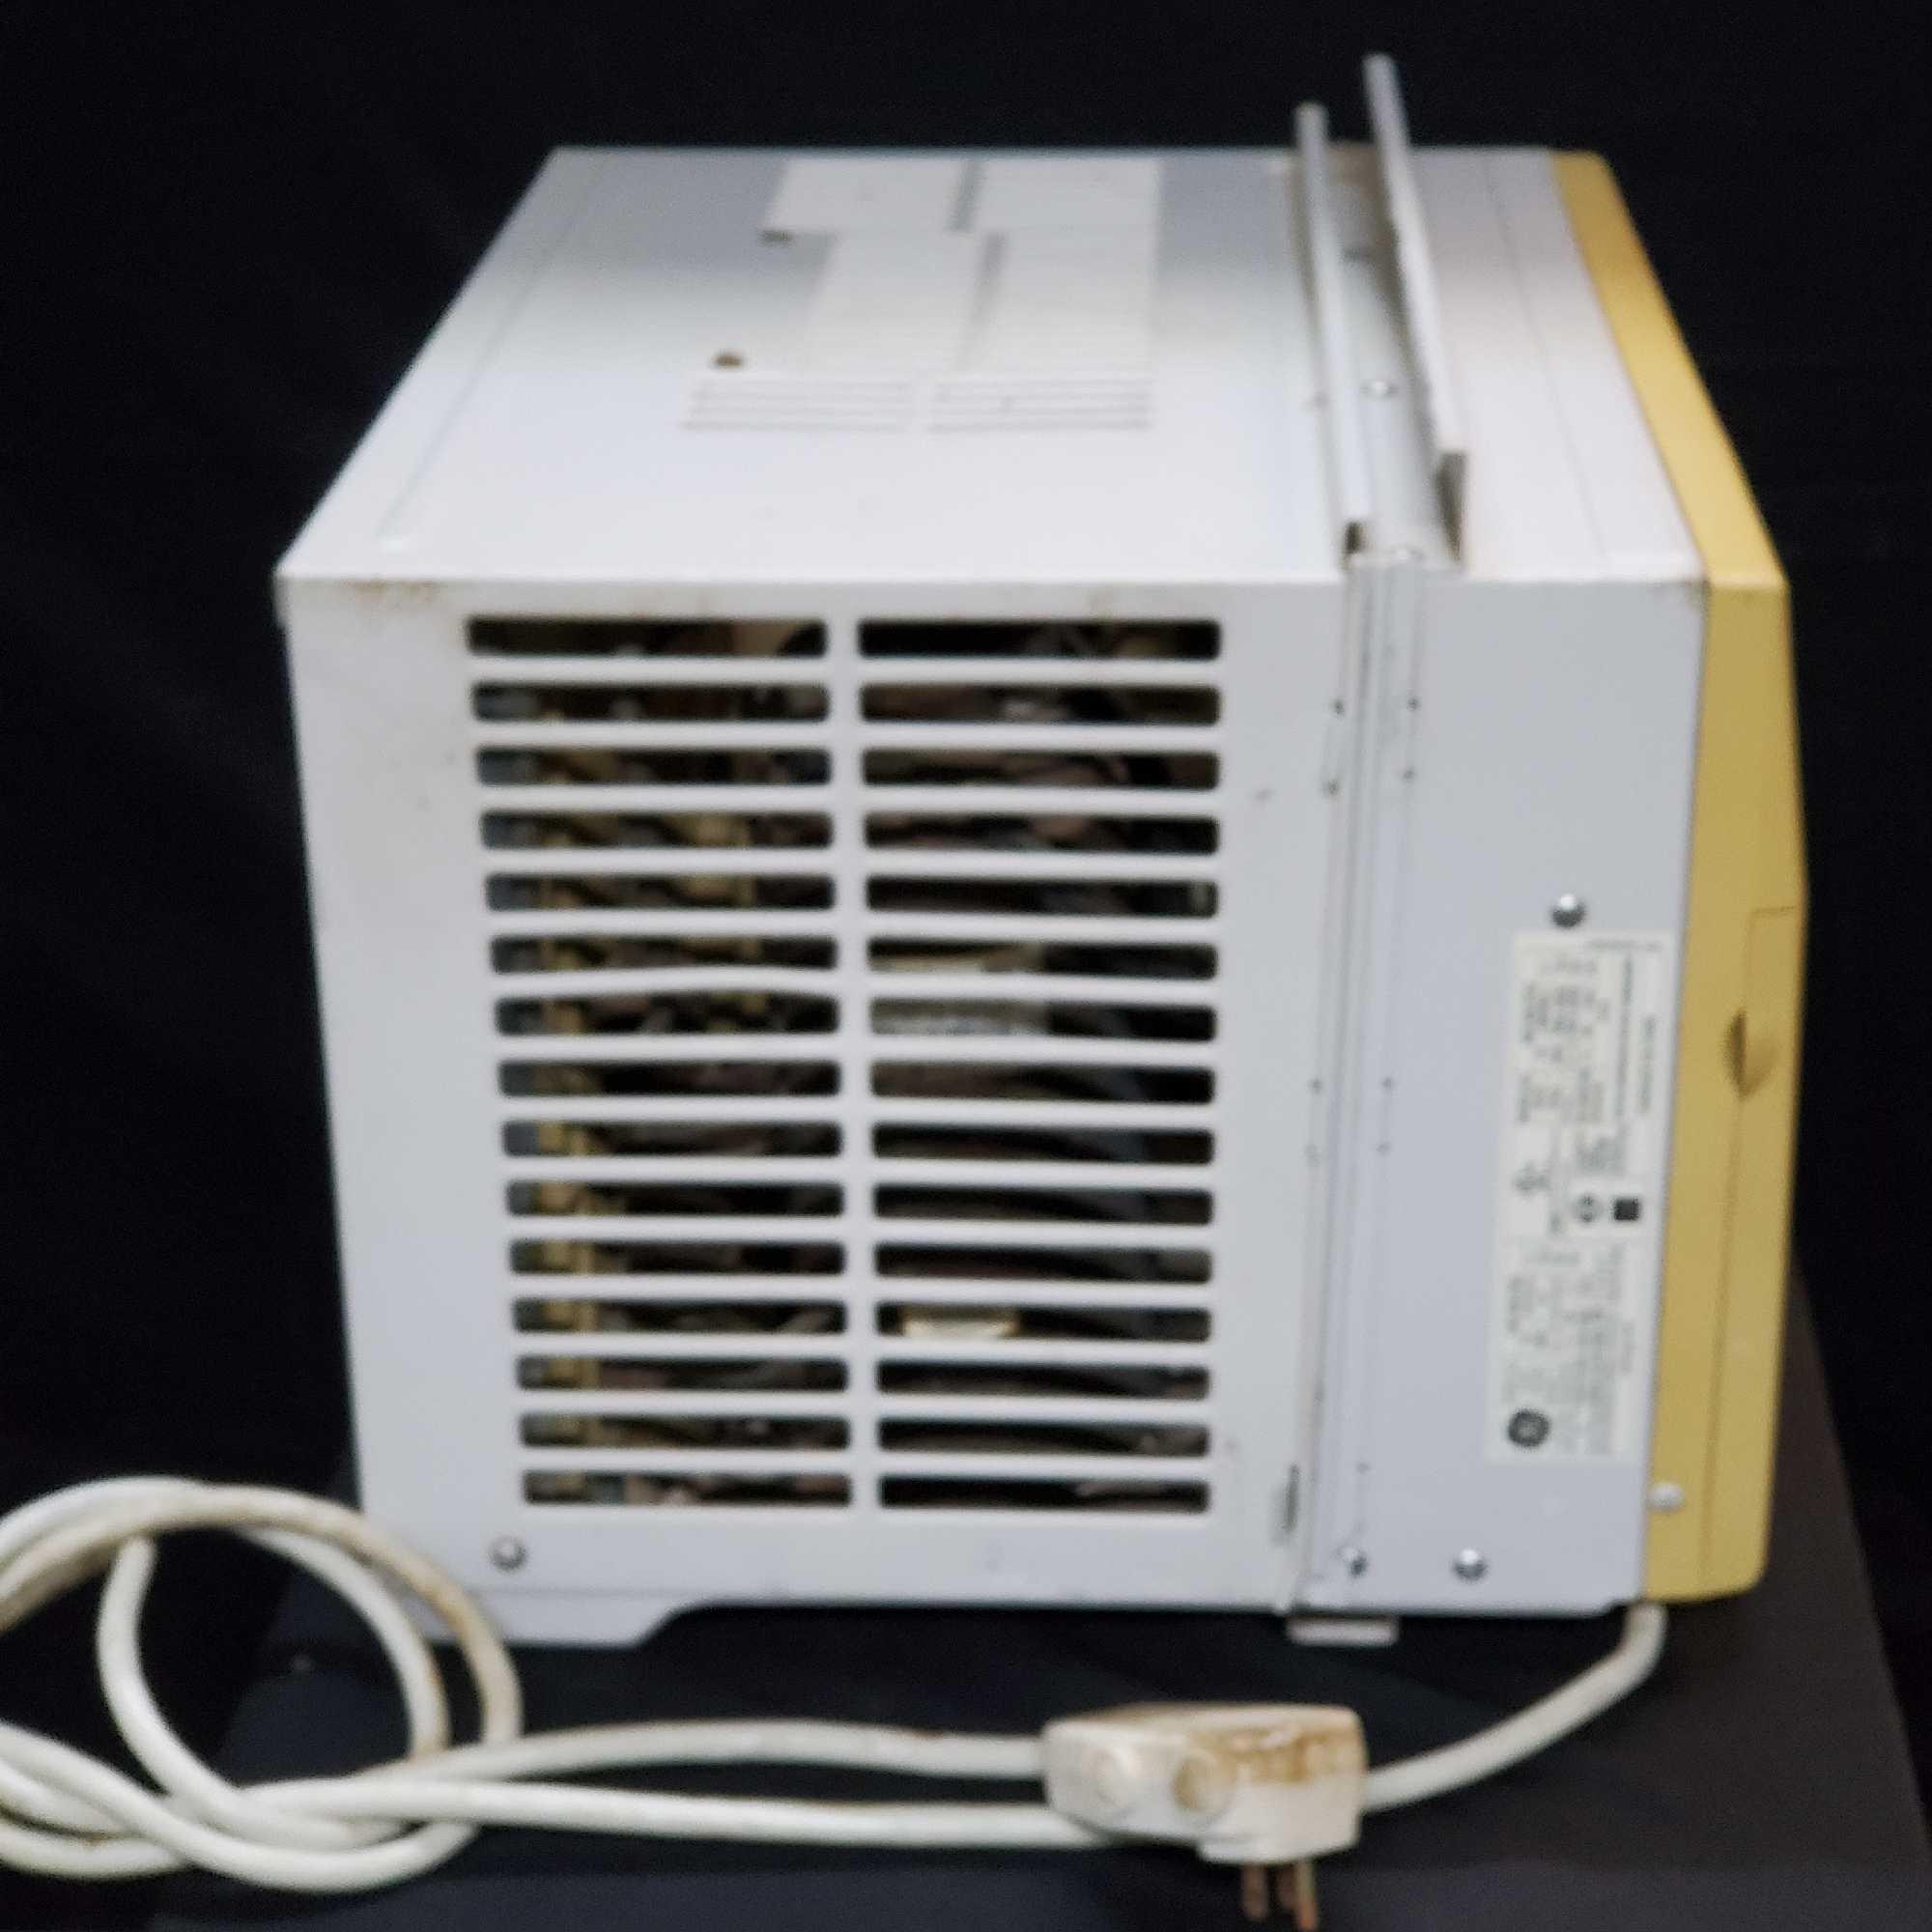 Air-conditioner swamp cooler model AELO8LQ1P